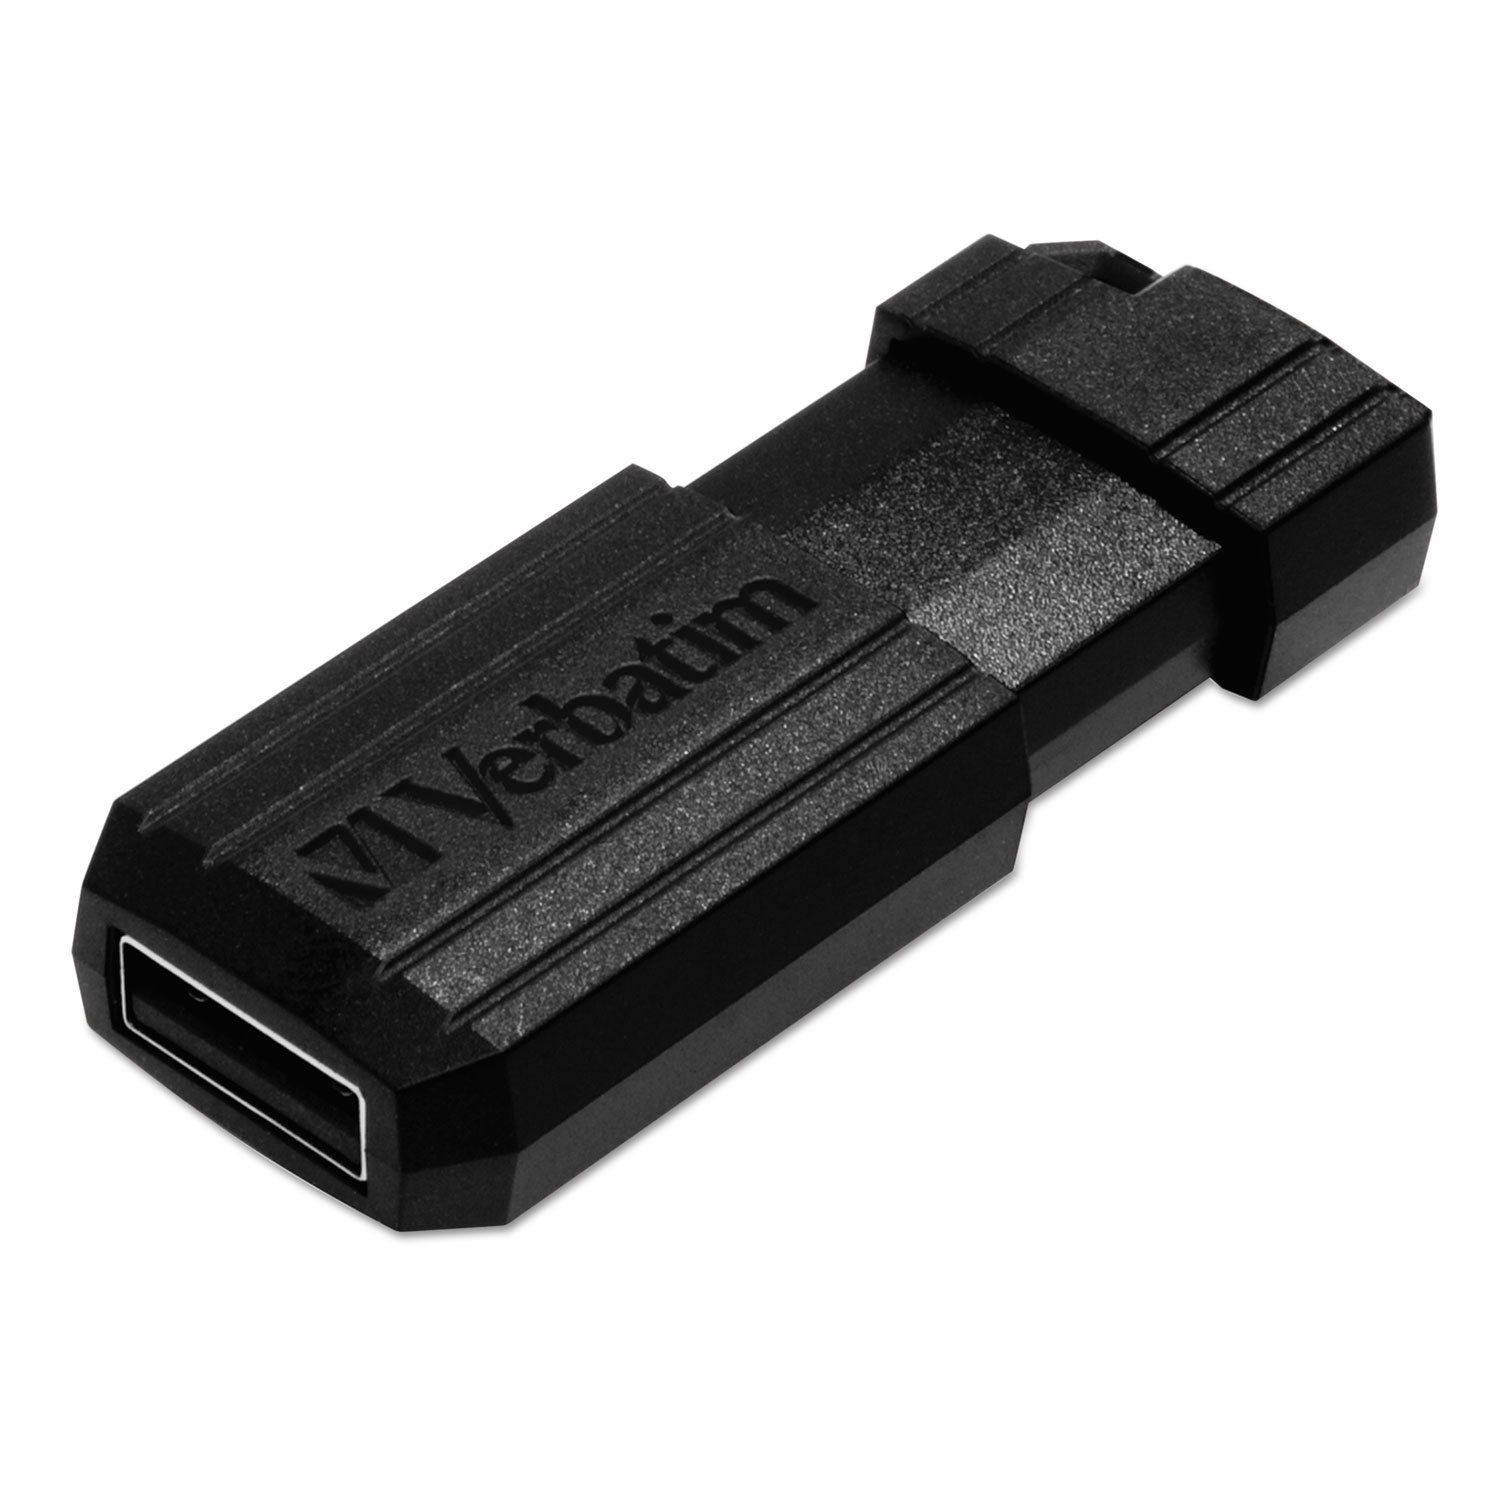 PinStripe USB Flash Drive, 128GB, Black